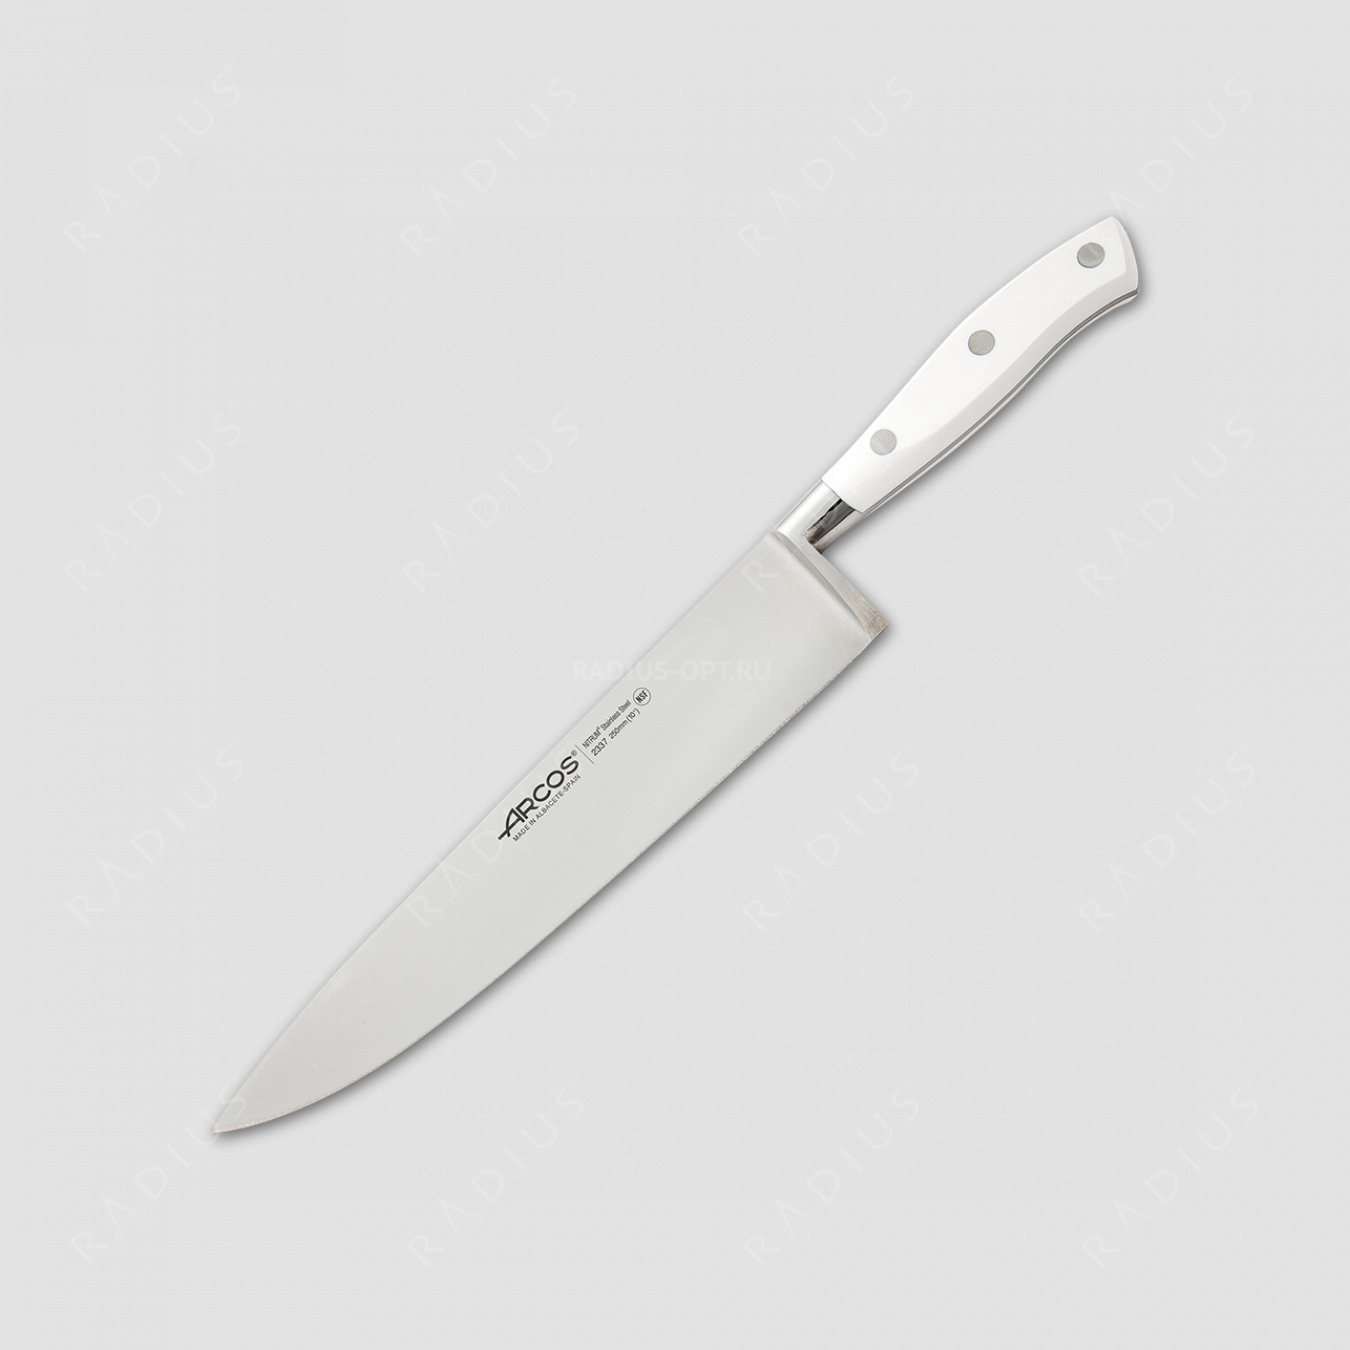 Профессиональный поварской кухонный нож 25 см, серия Riviera Blanca, ARCOS, Испания